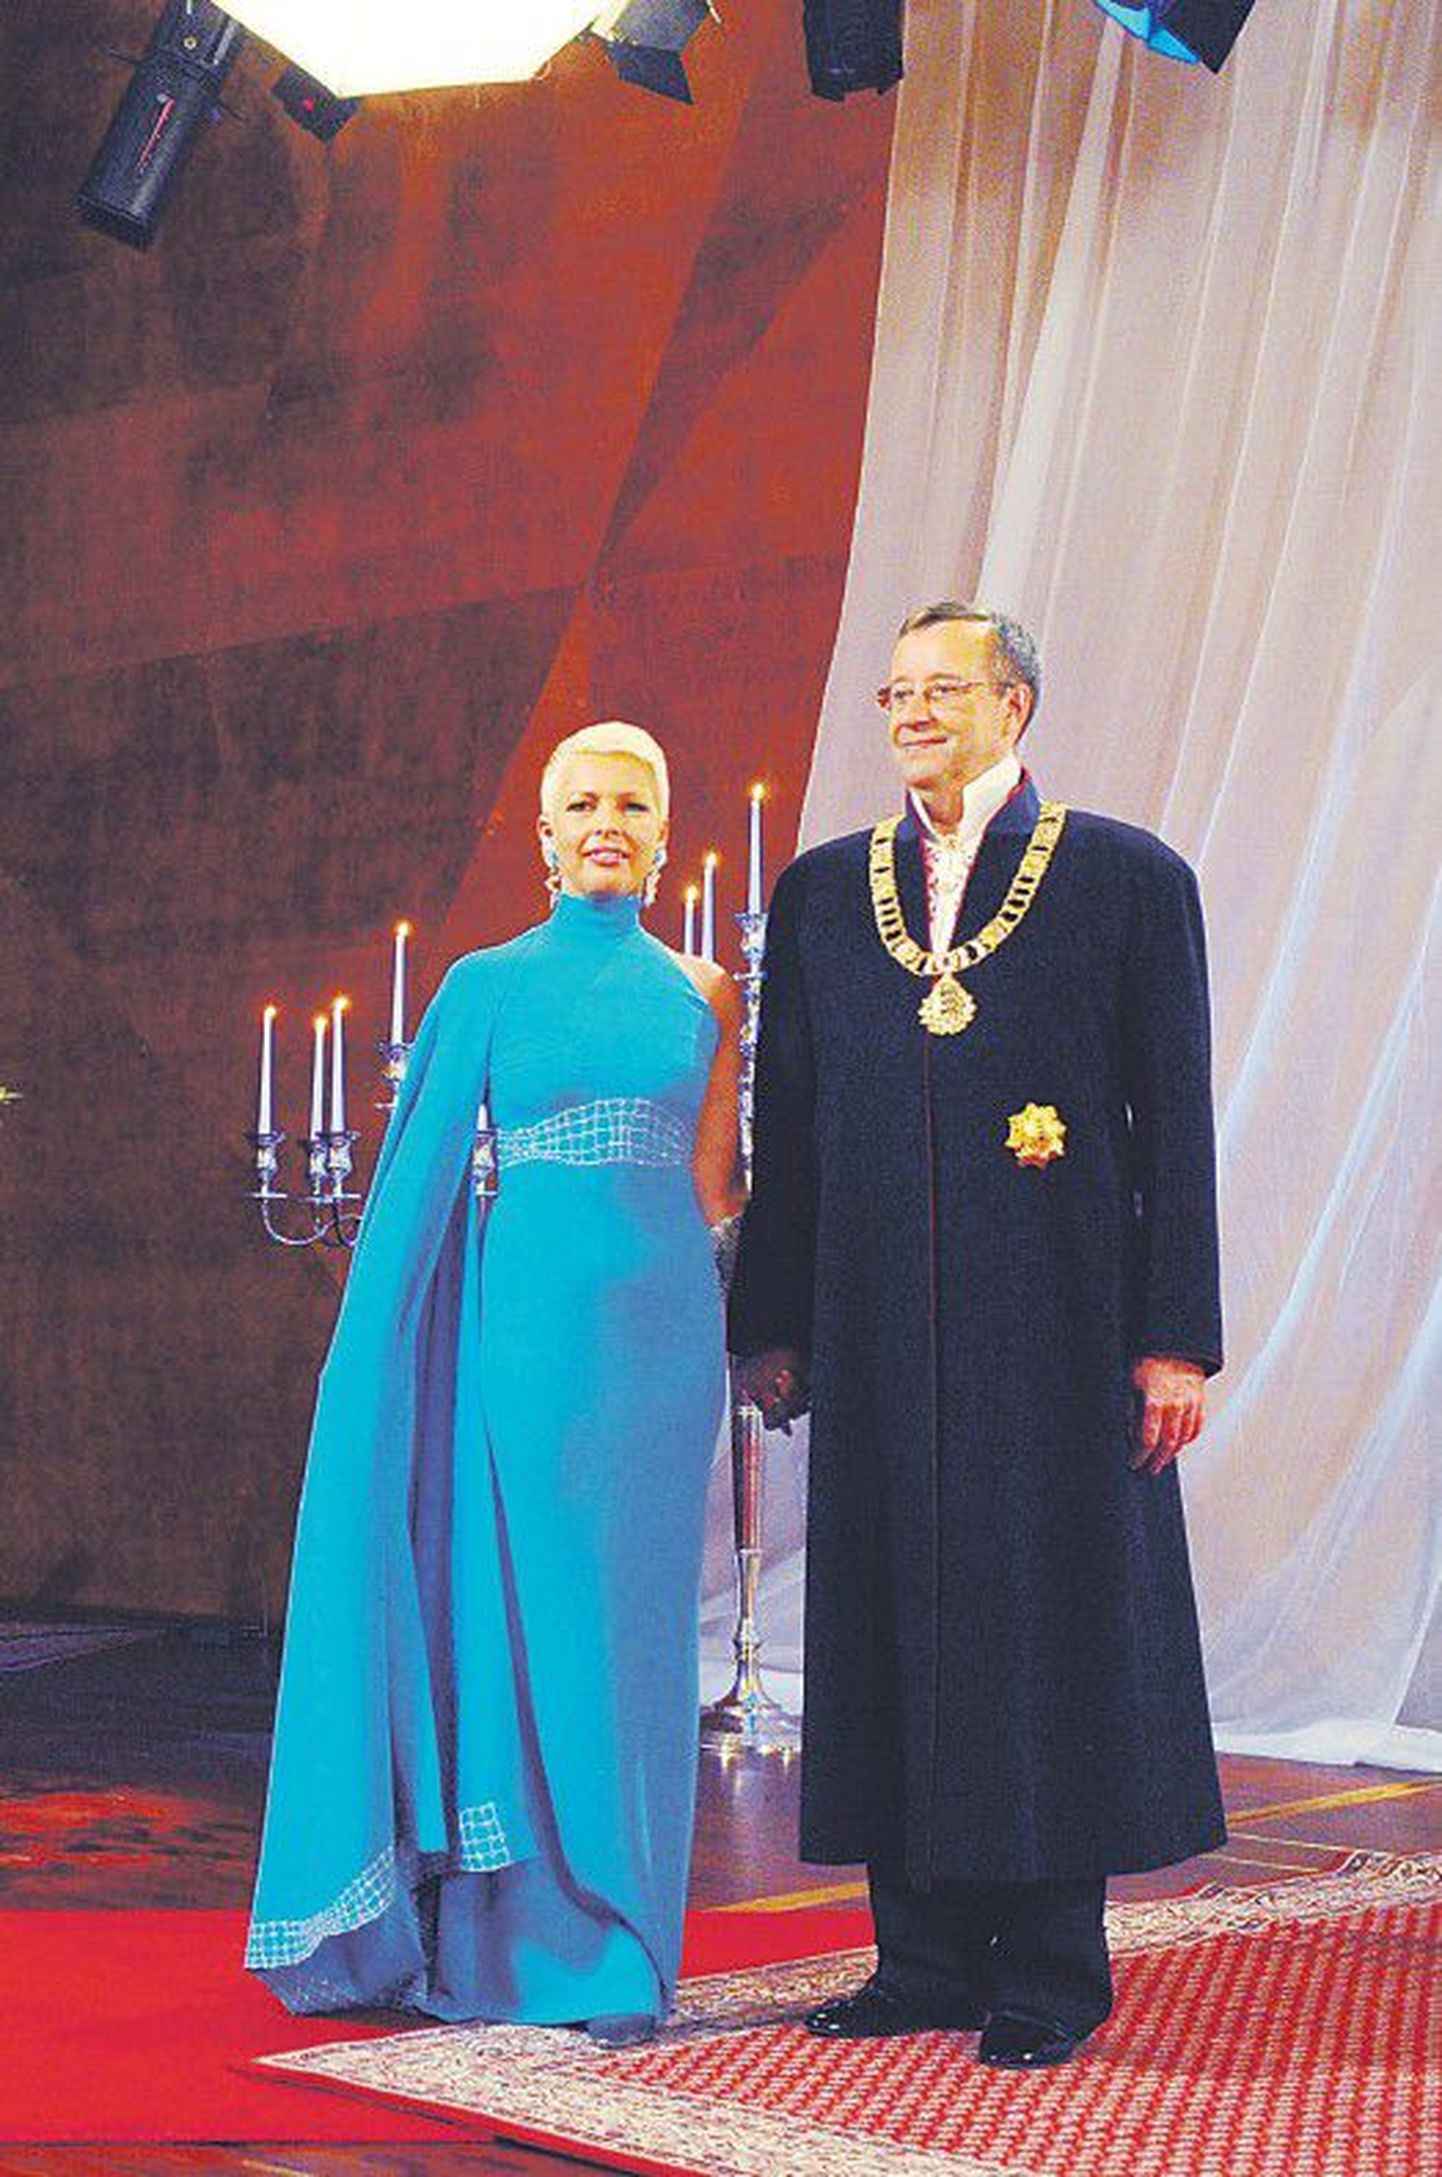 Супруга президента Эвелин Ильвес и президент Тоомас Хендрик Ильвес хотят, чтобы нынешний президентский прием был еще торжественнее и грандиознее, чем в прошлые годы.